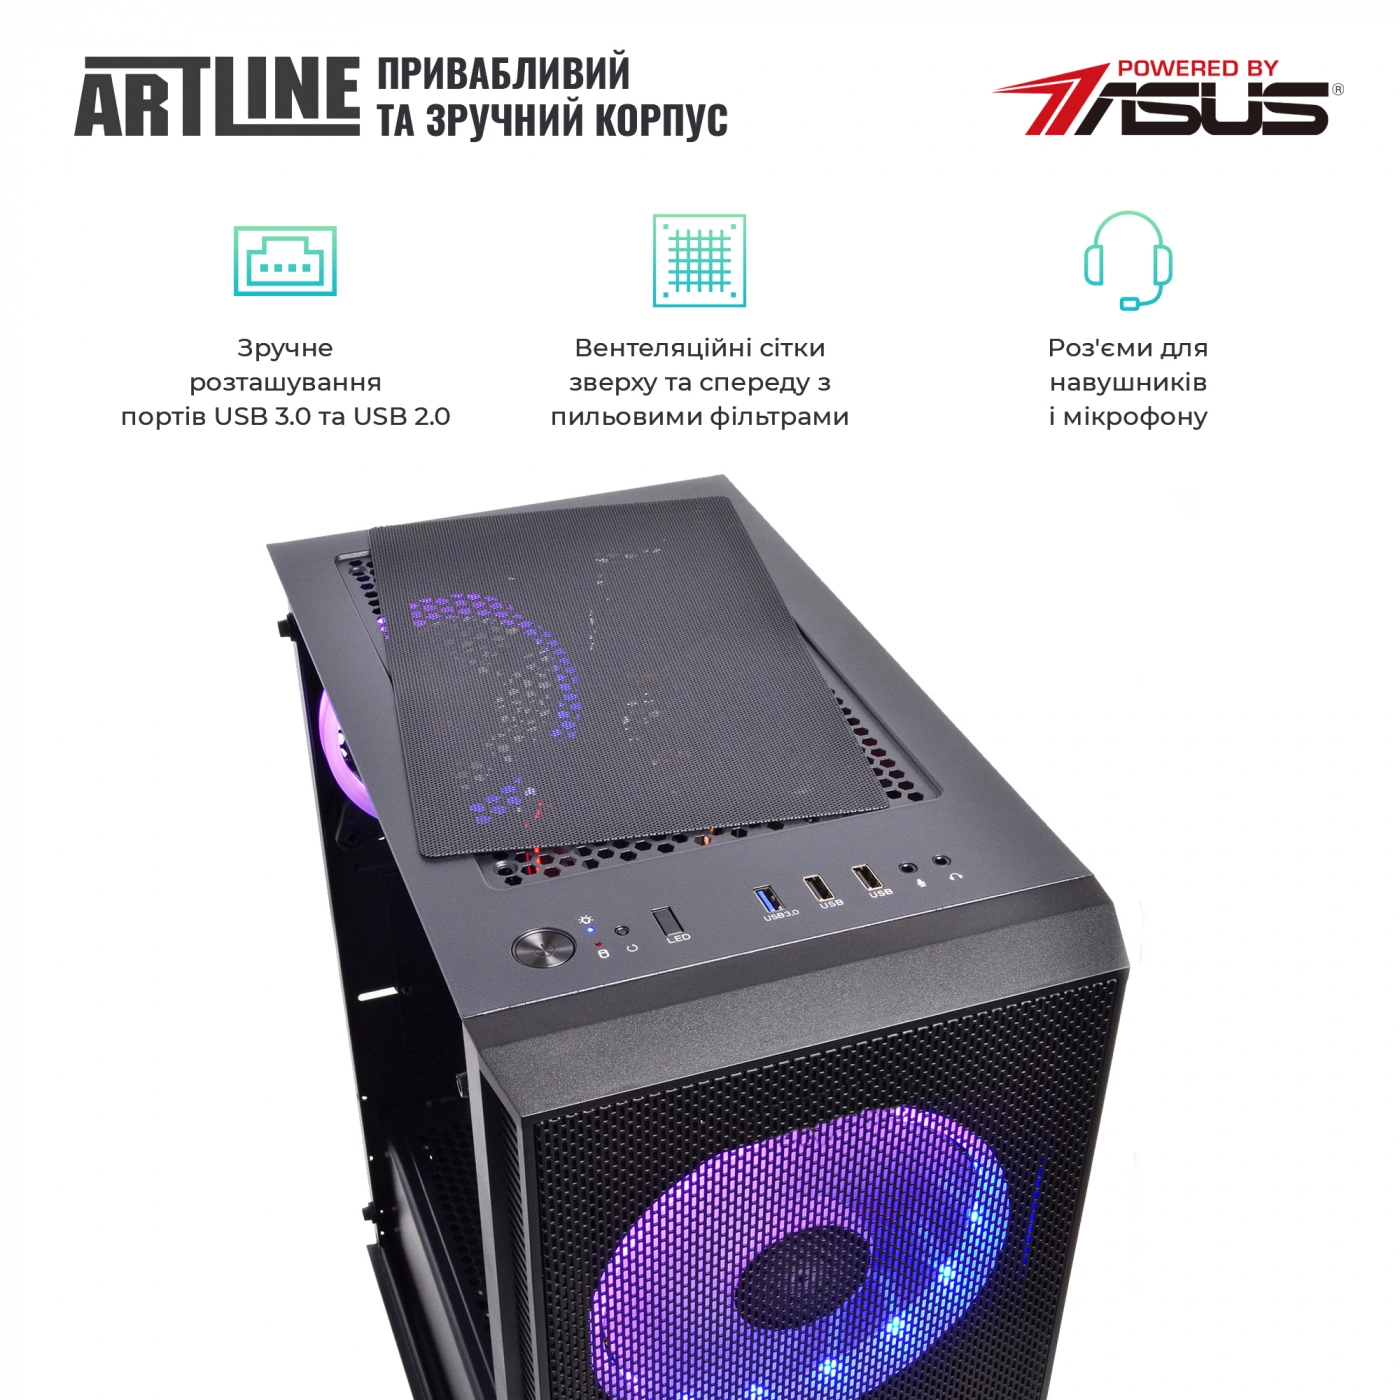 Купить Компьютер ARTLINE Gaming X53v23 - фото 4